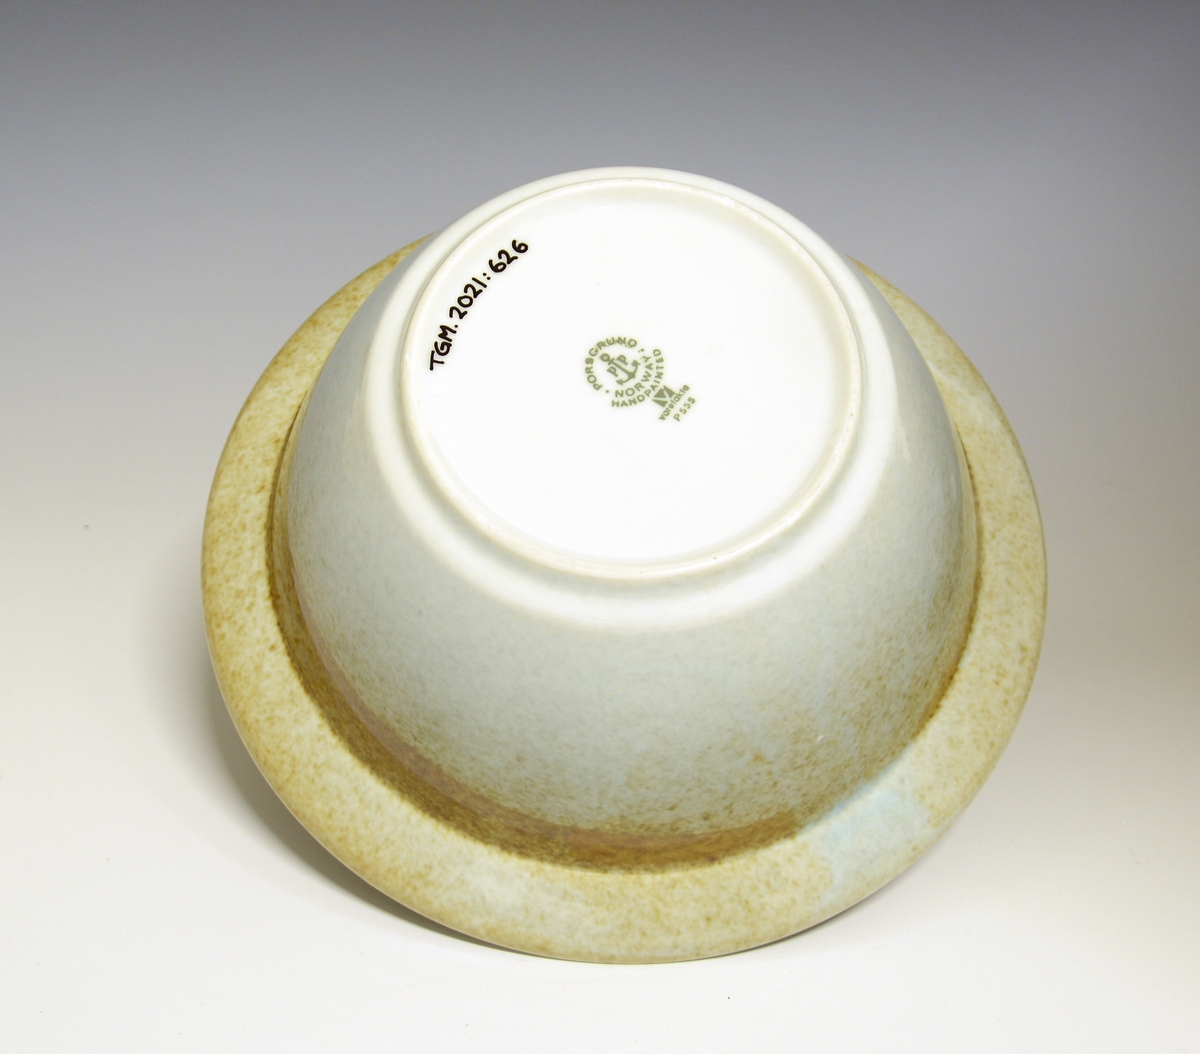 Bolle i tykt porselen. Formgitt av Eystein Sandnes. I produksjon fra 1971.
Modell: Eystein.
Dekor: Tundra.